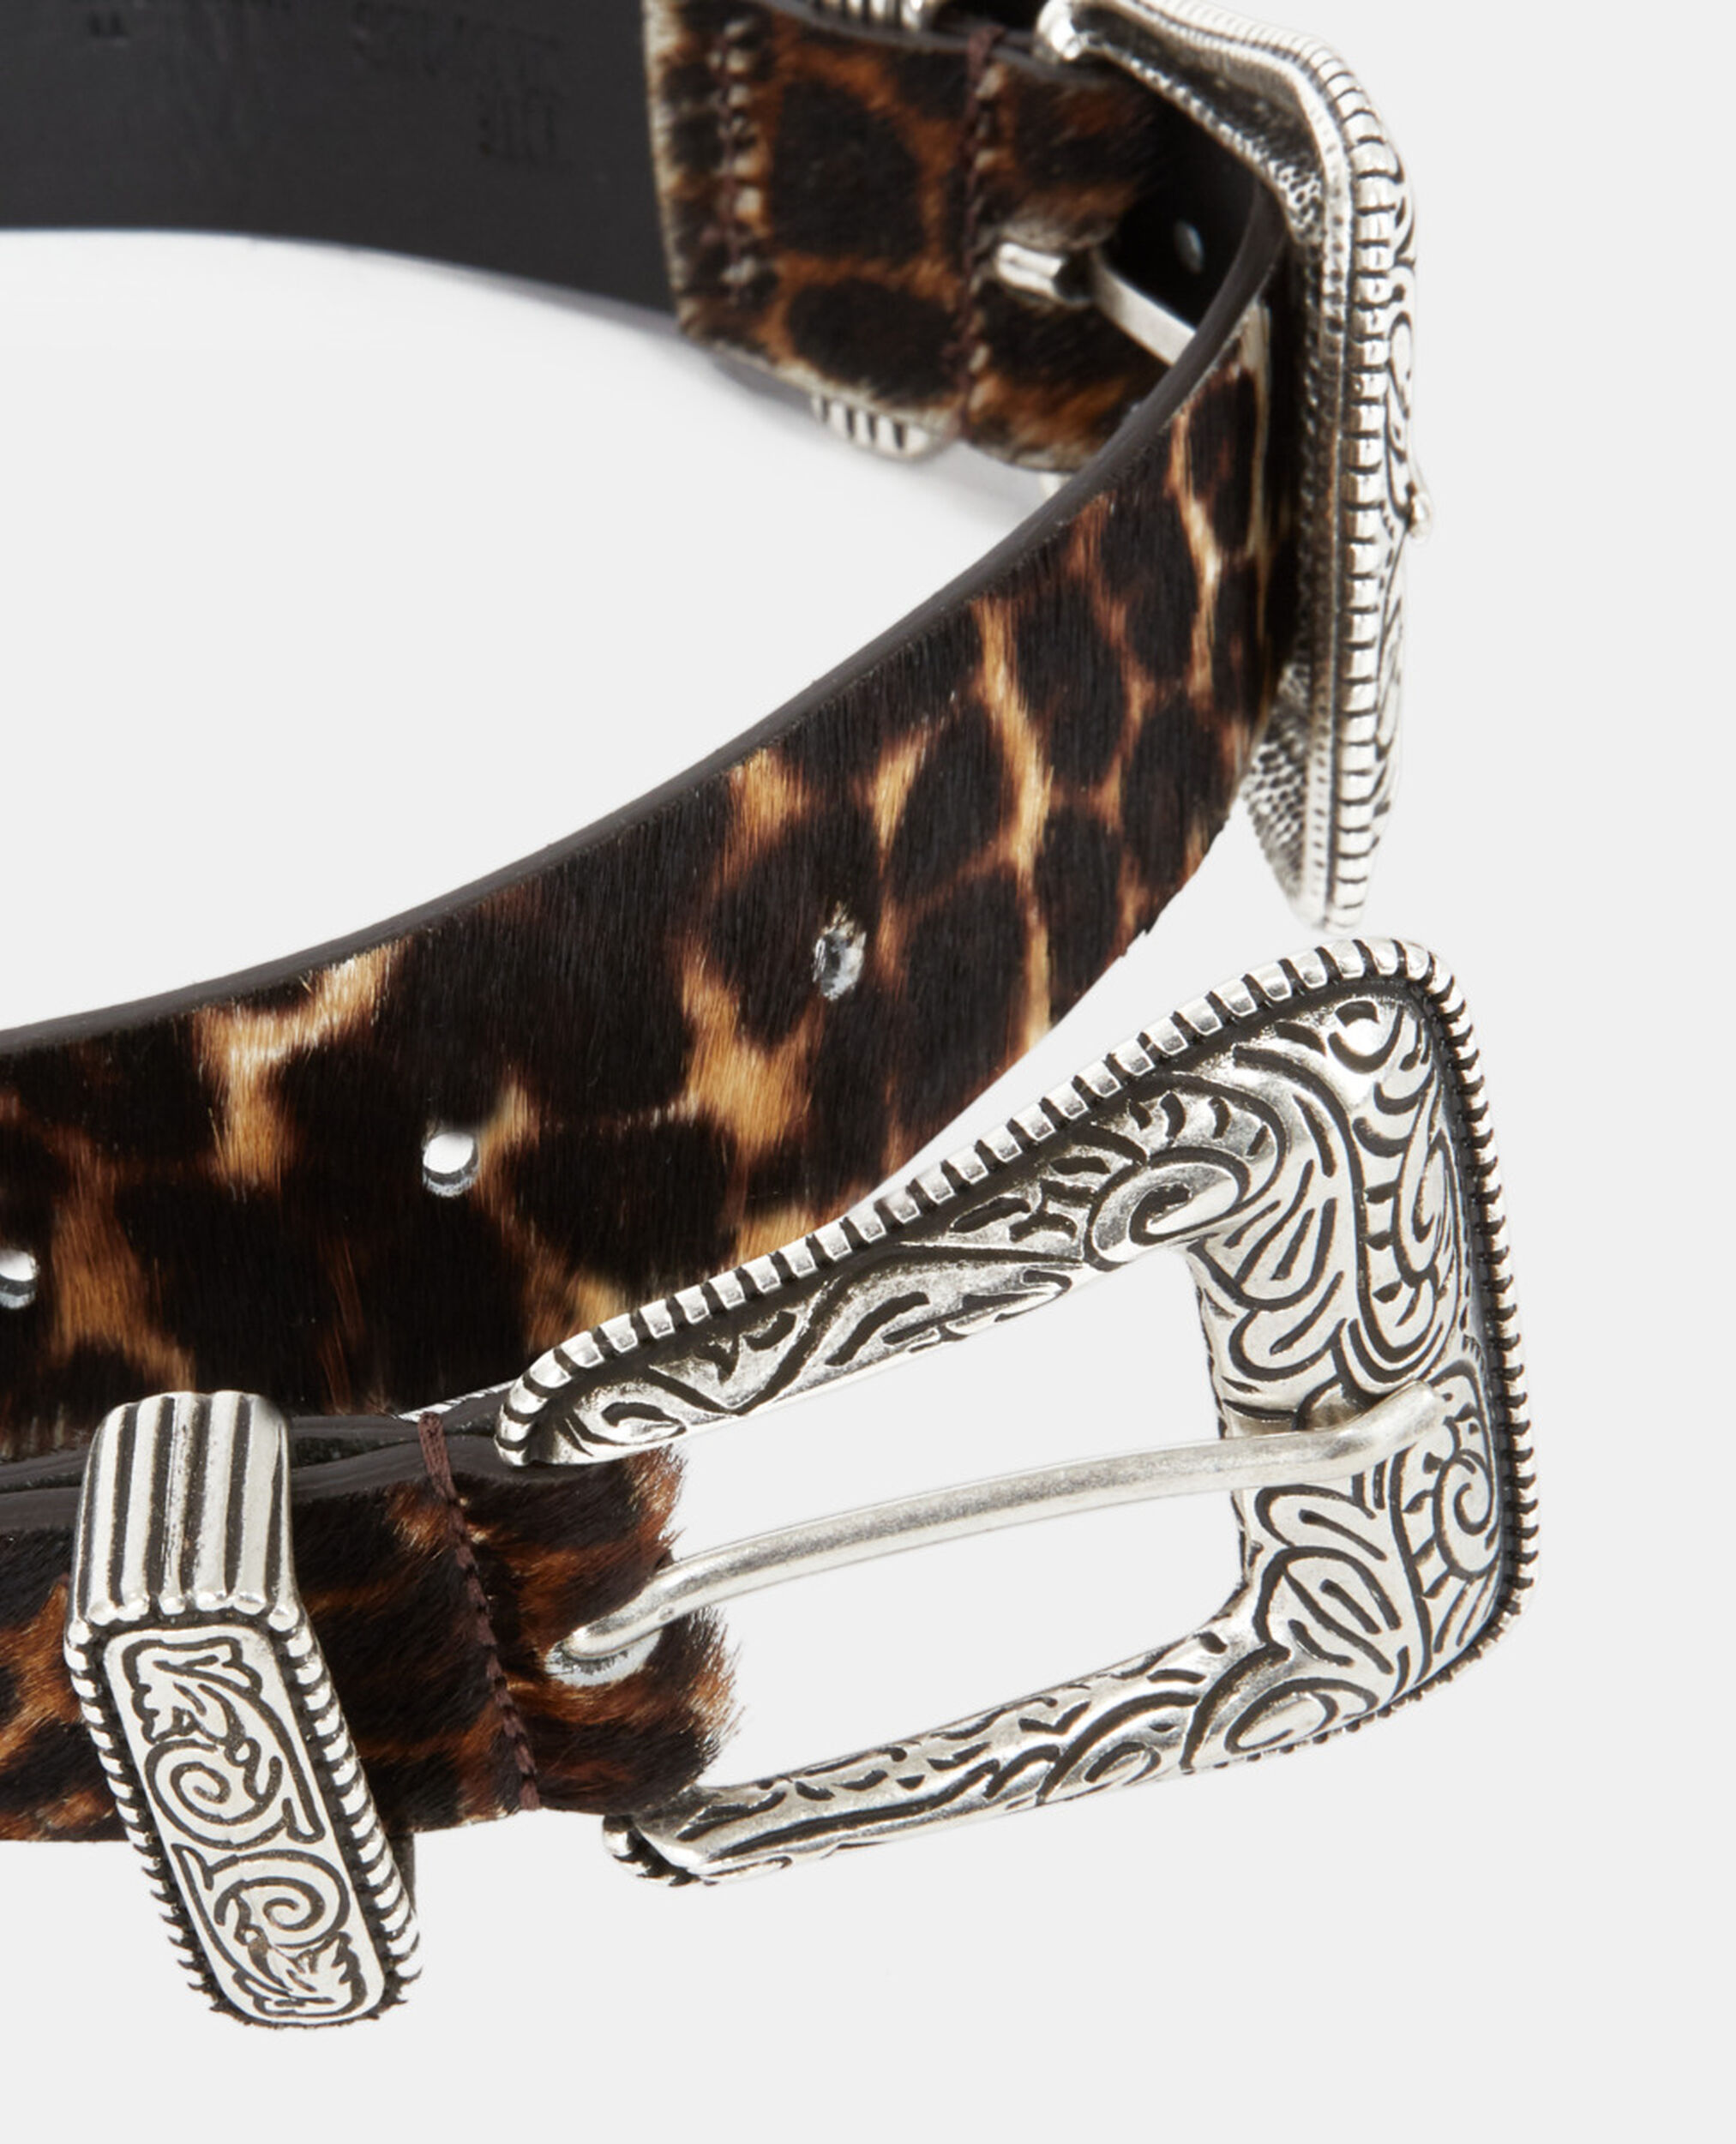 Leopard print leather belt, LEOPARD, hi-res image number null